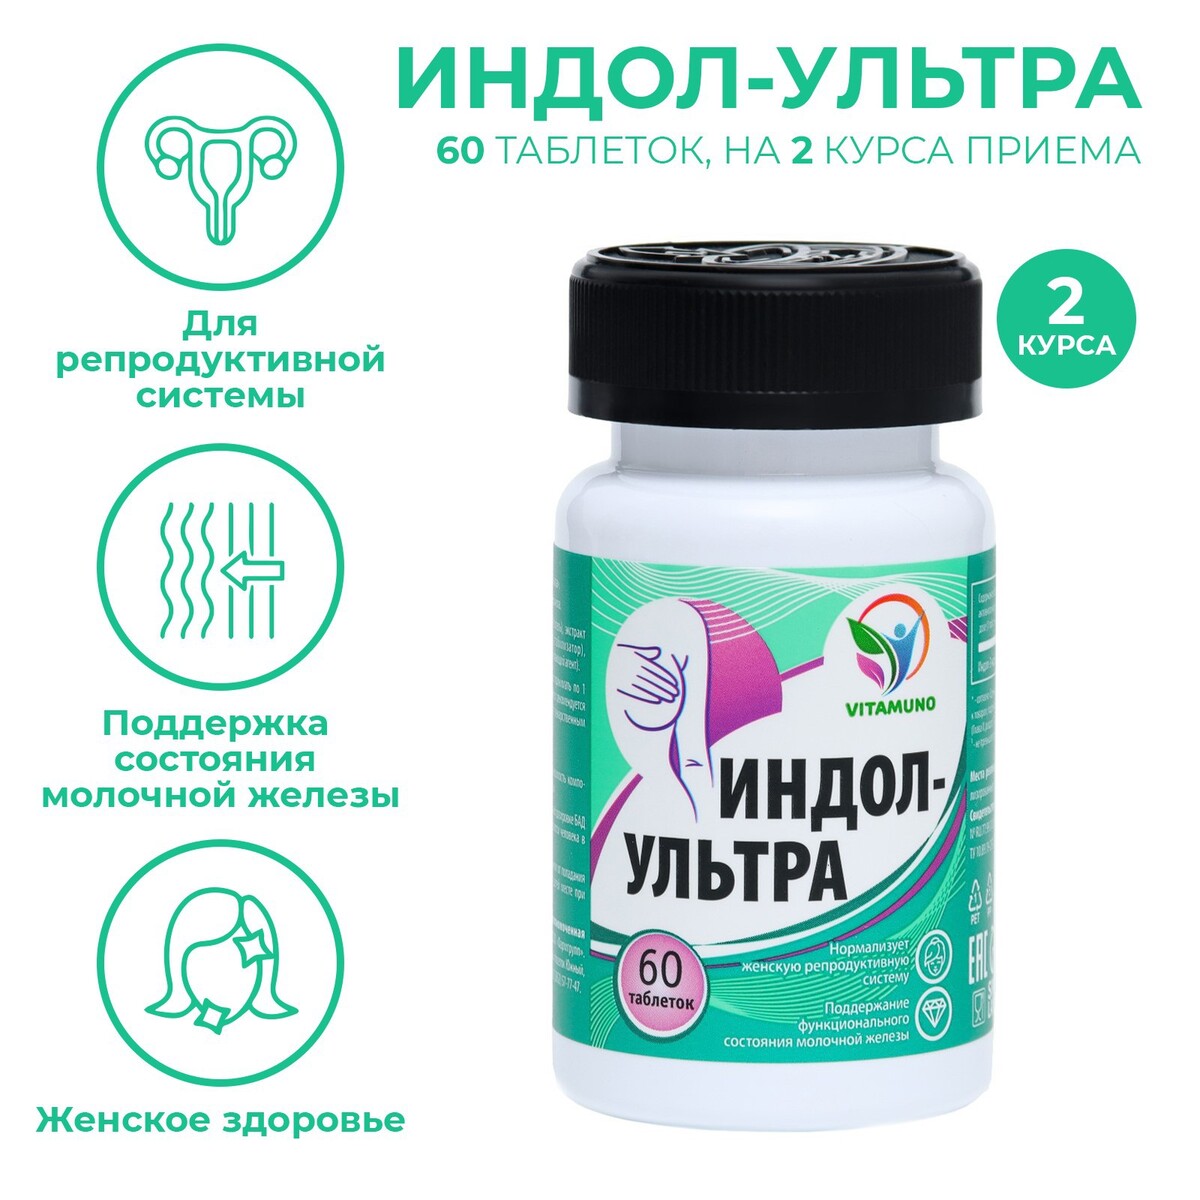 Индол-ультра, 60 таблеток по 500 мг Vitamuno